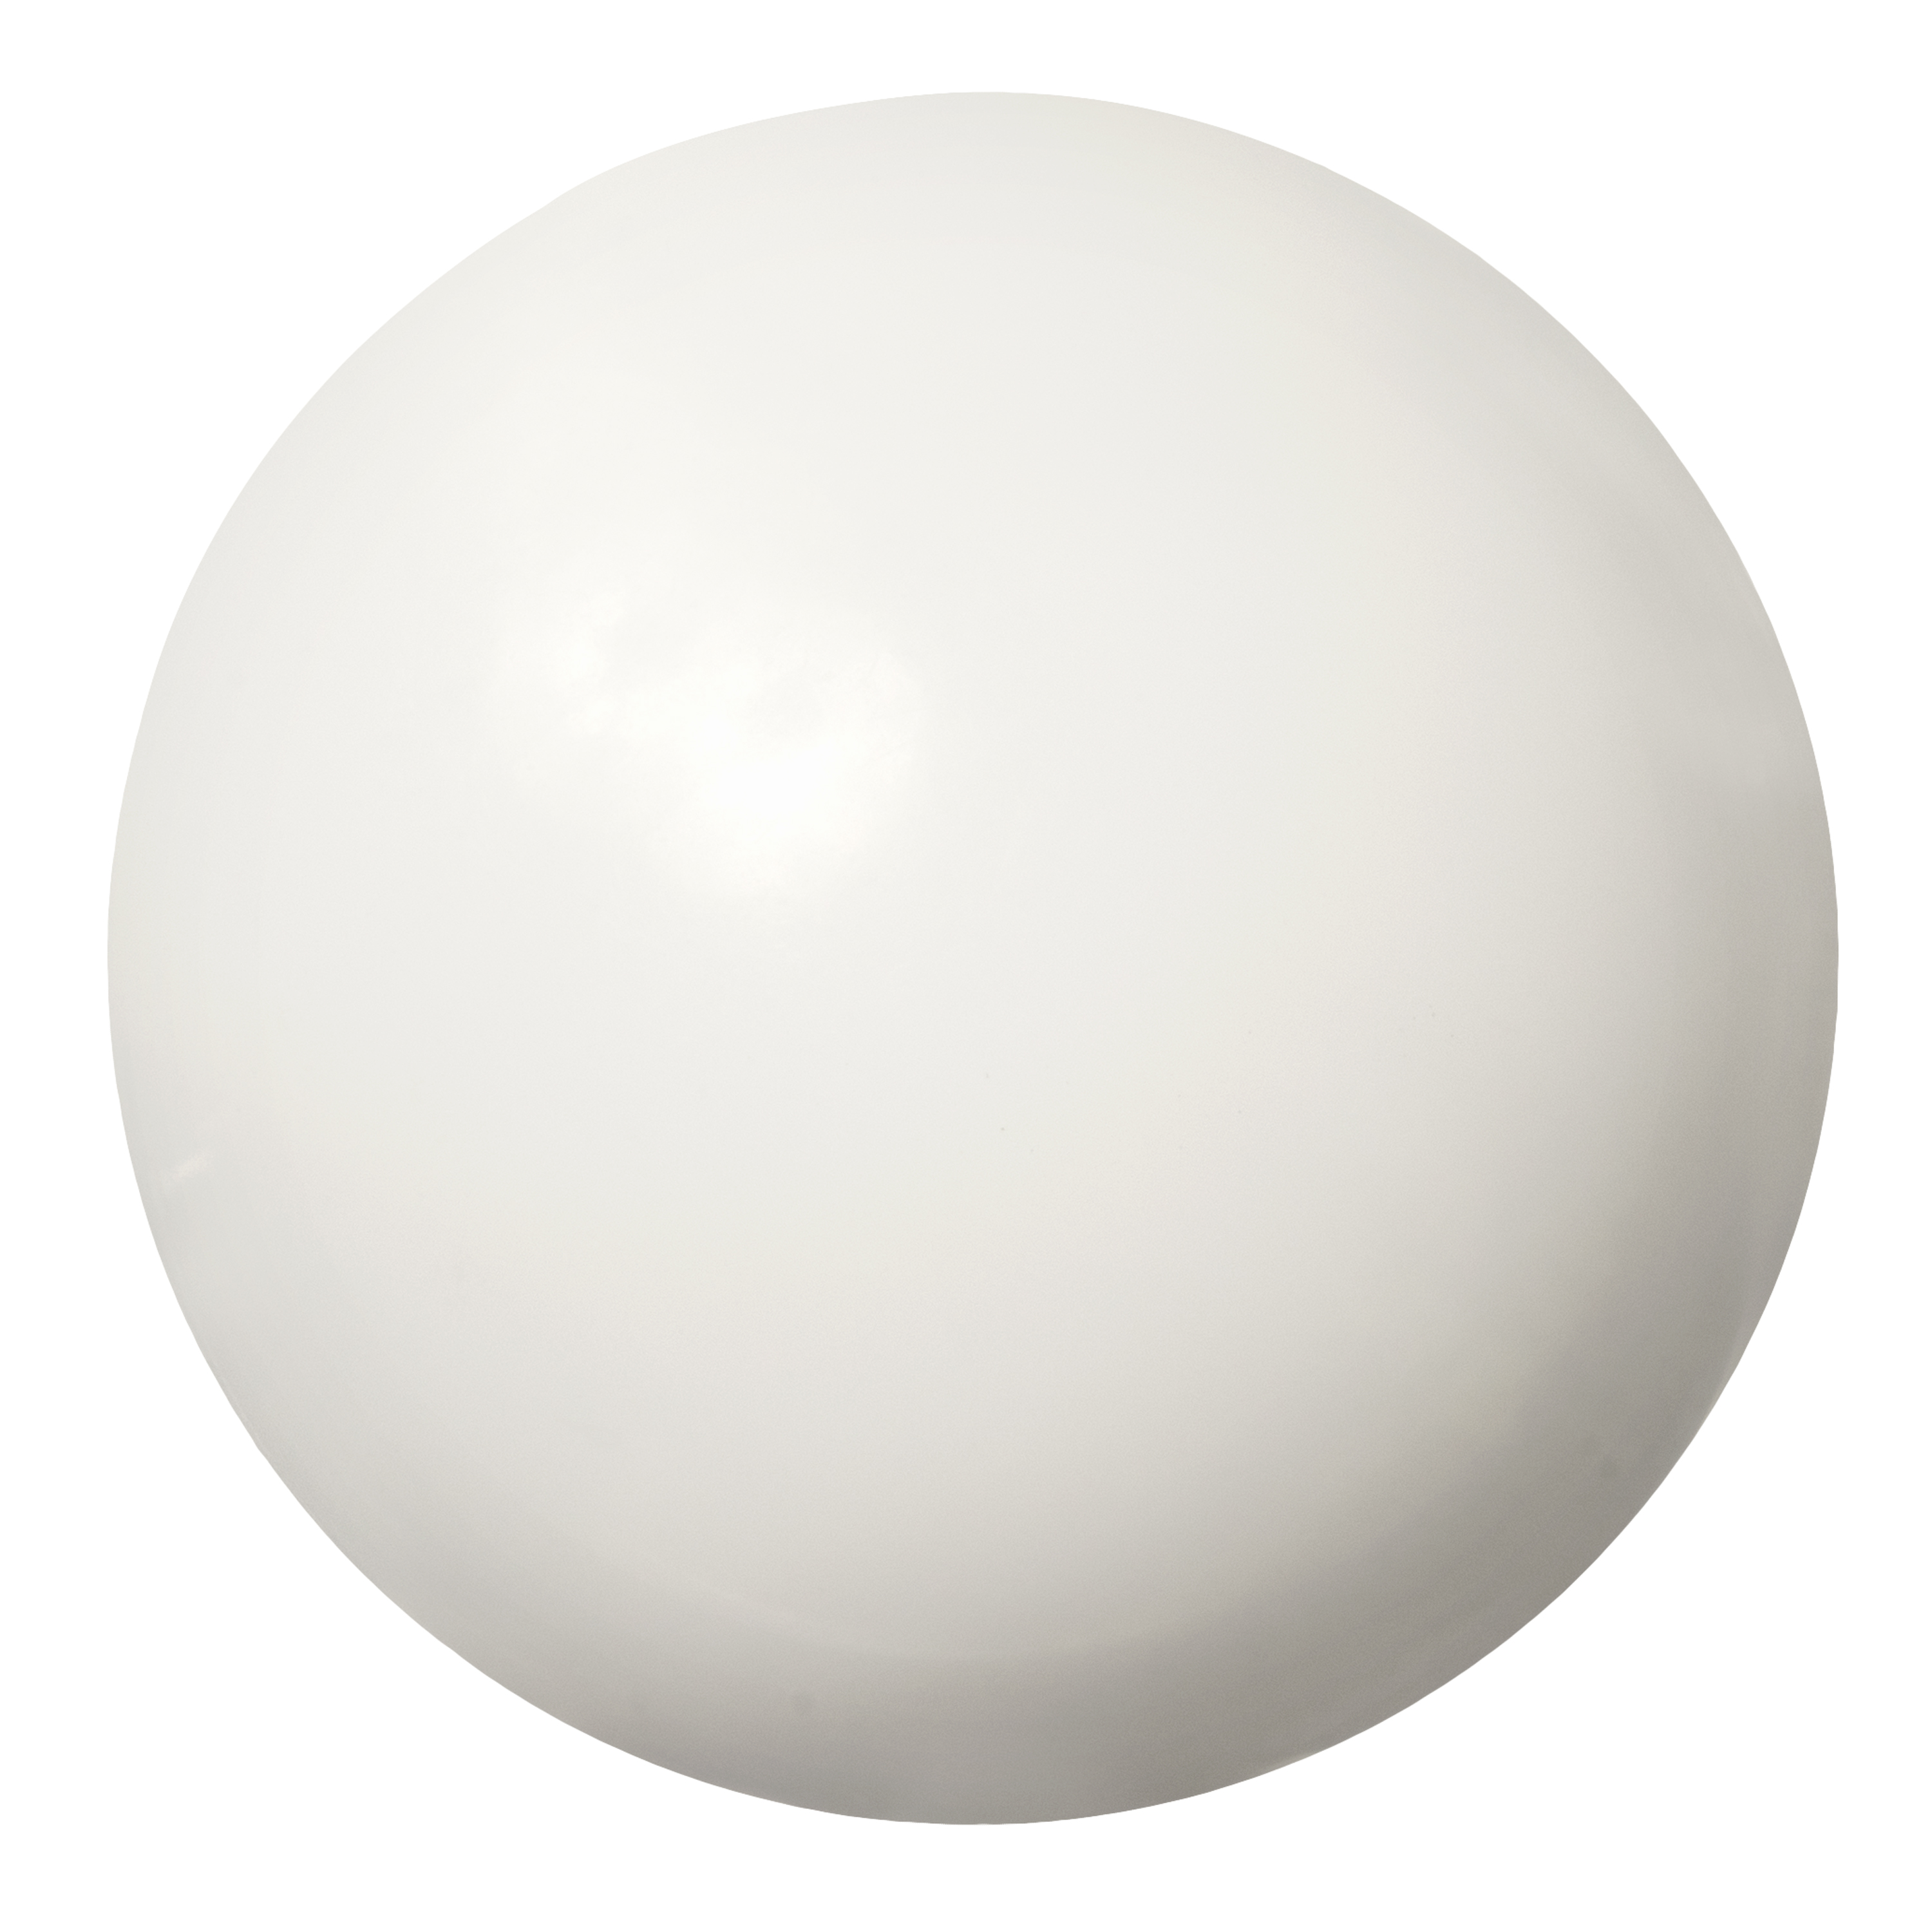 塑料球-聚丙烯(美國密封)